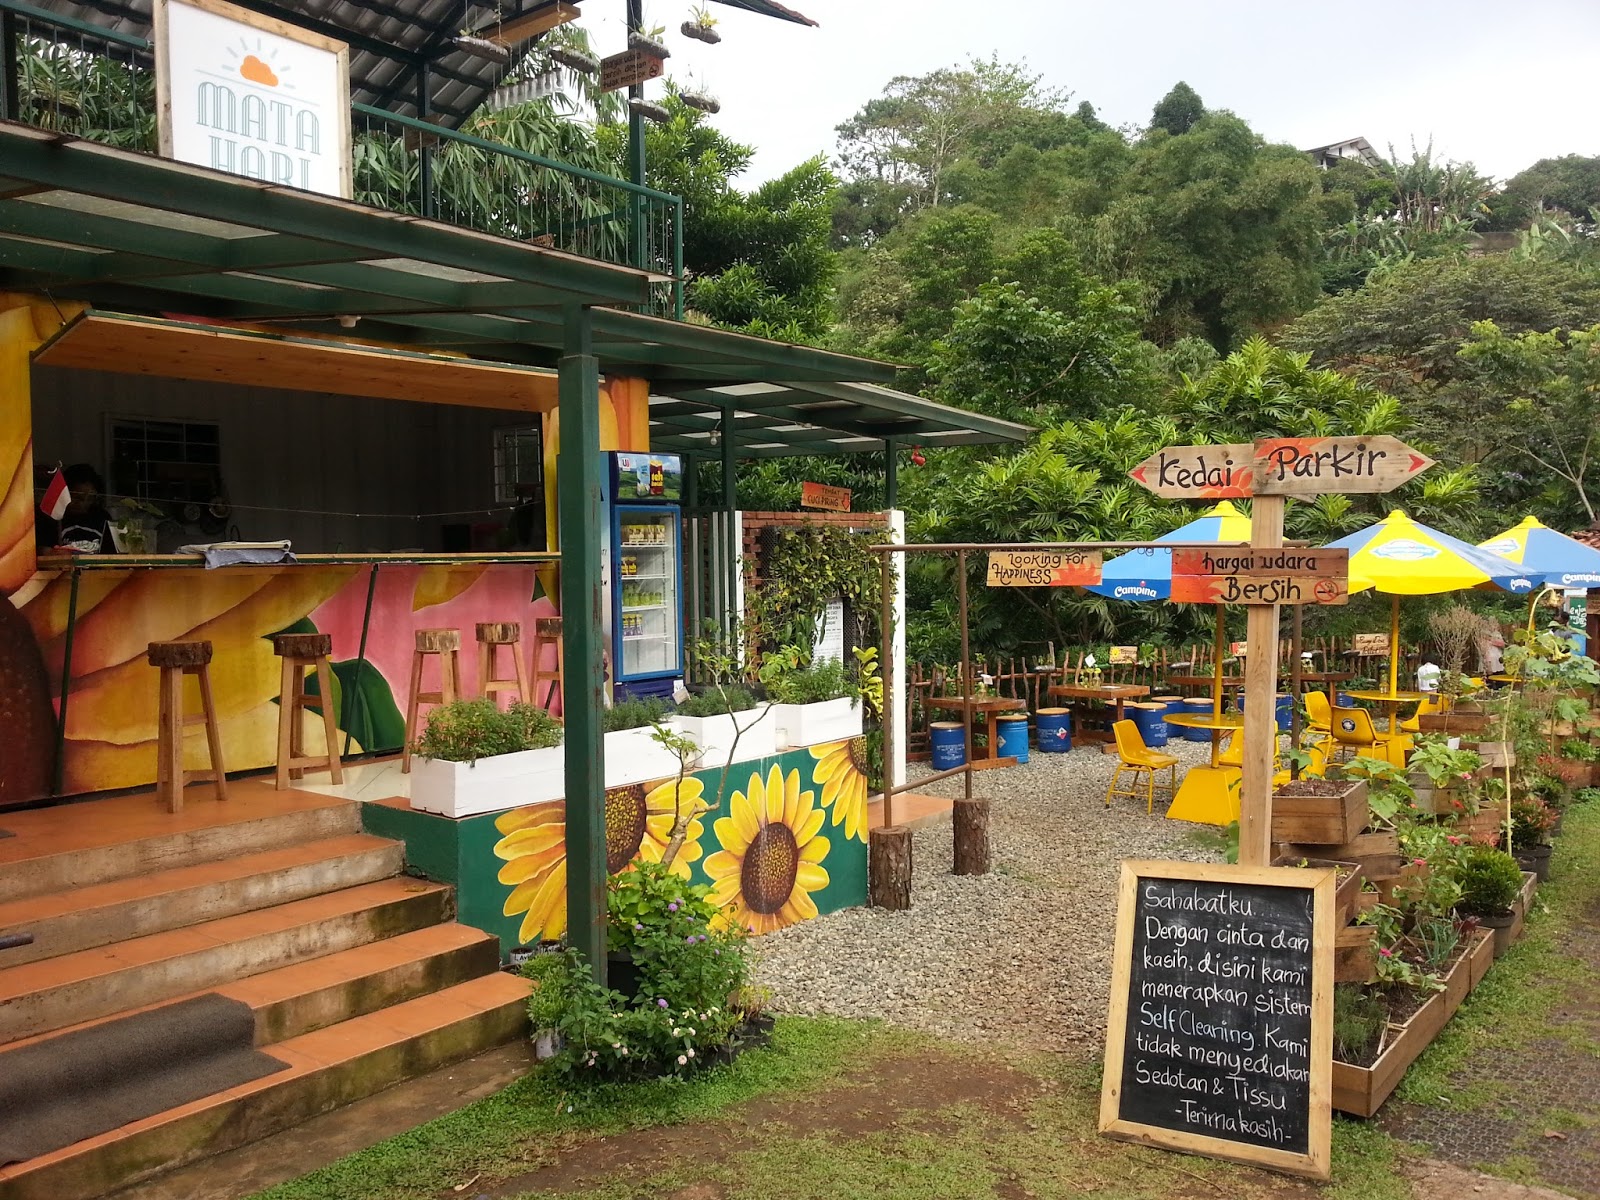 Kedai Makan Untuk Disewa 2017 Kedai Makan untuk Disewa Sungai Ramal